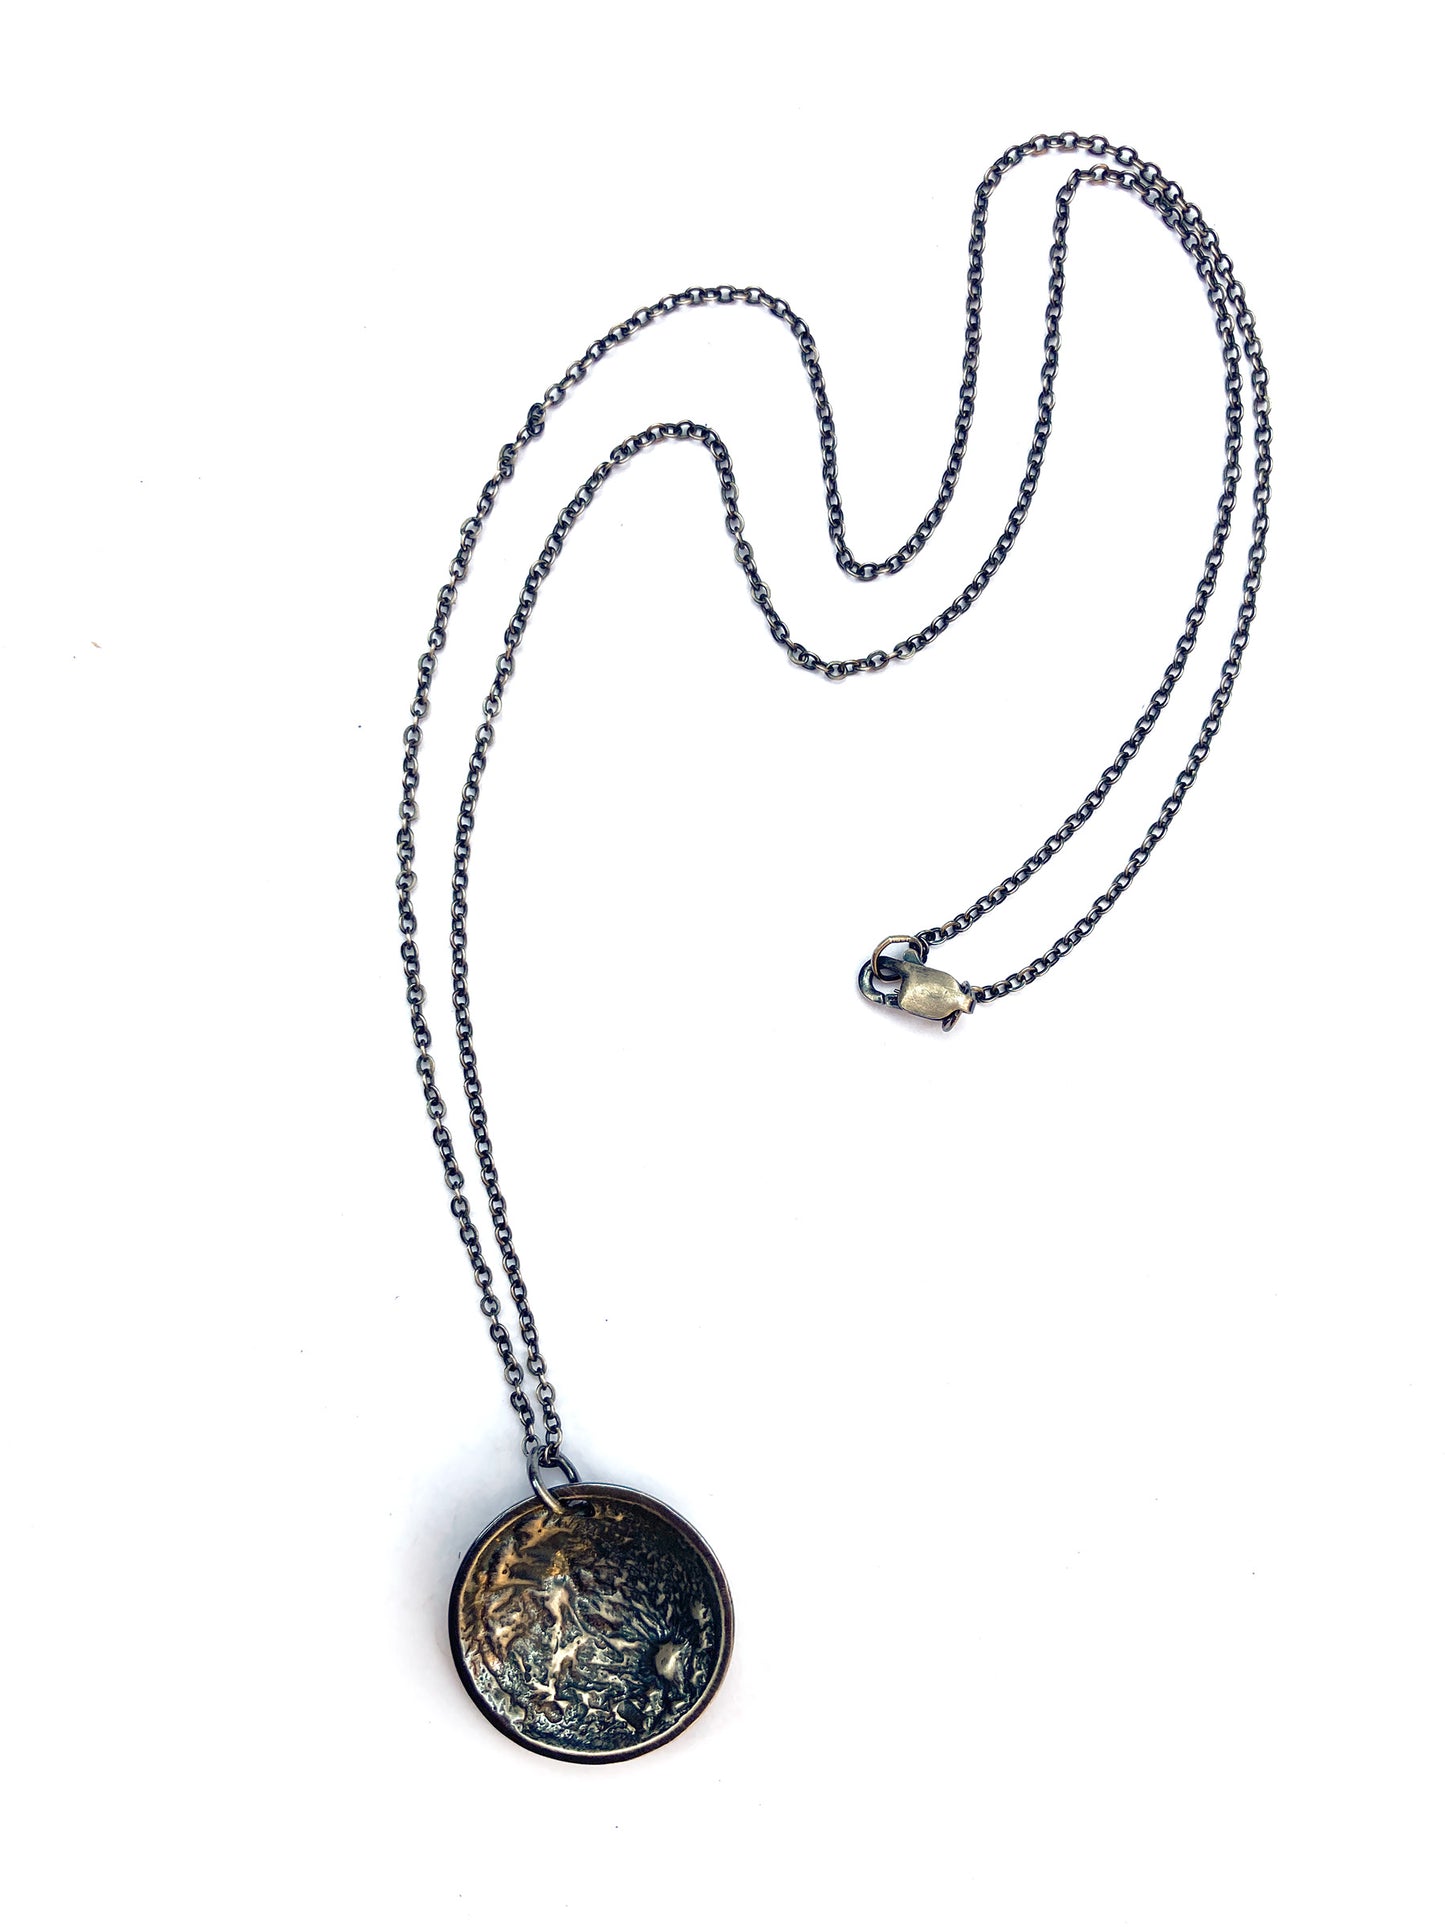 Lunar Landing Necklace, Large, Dark Silver